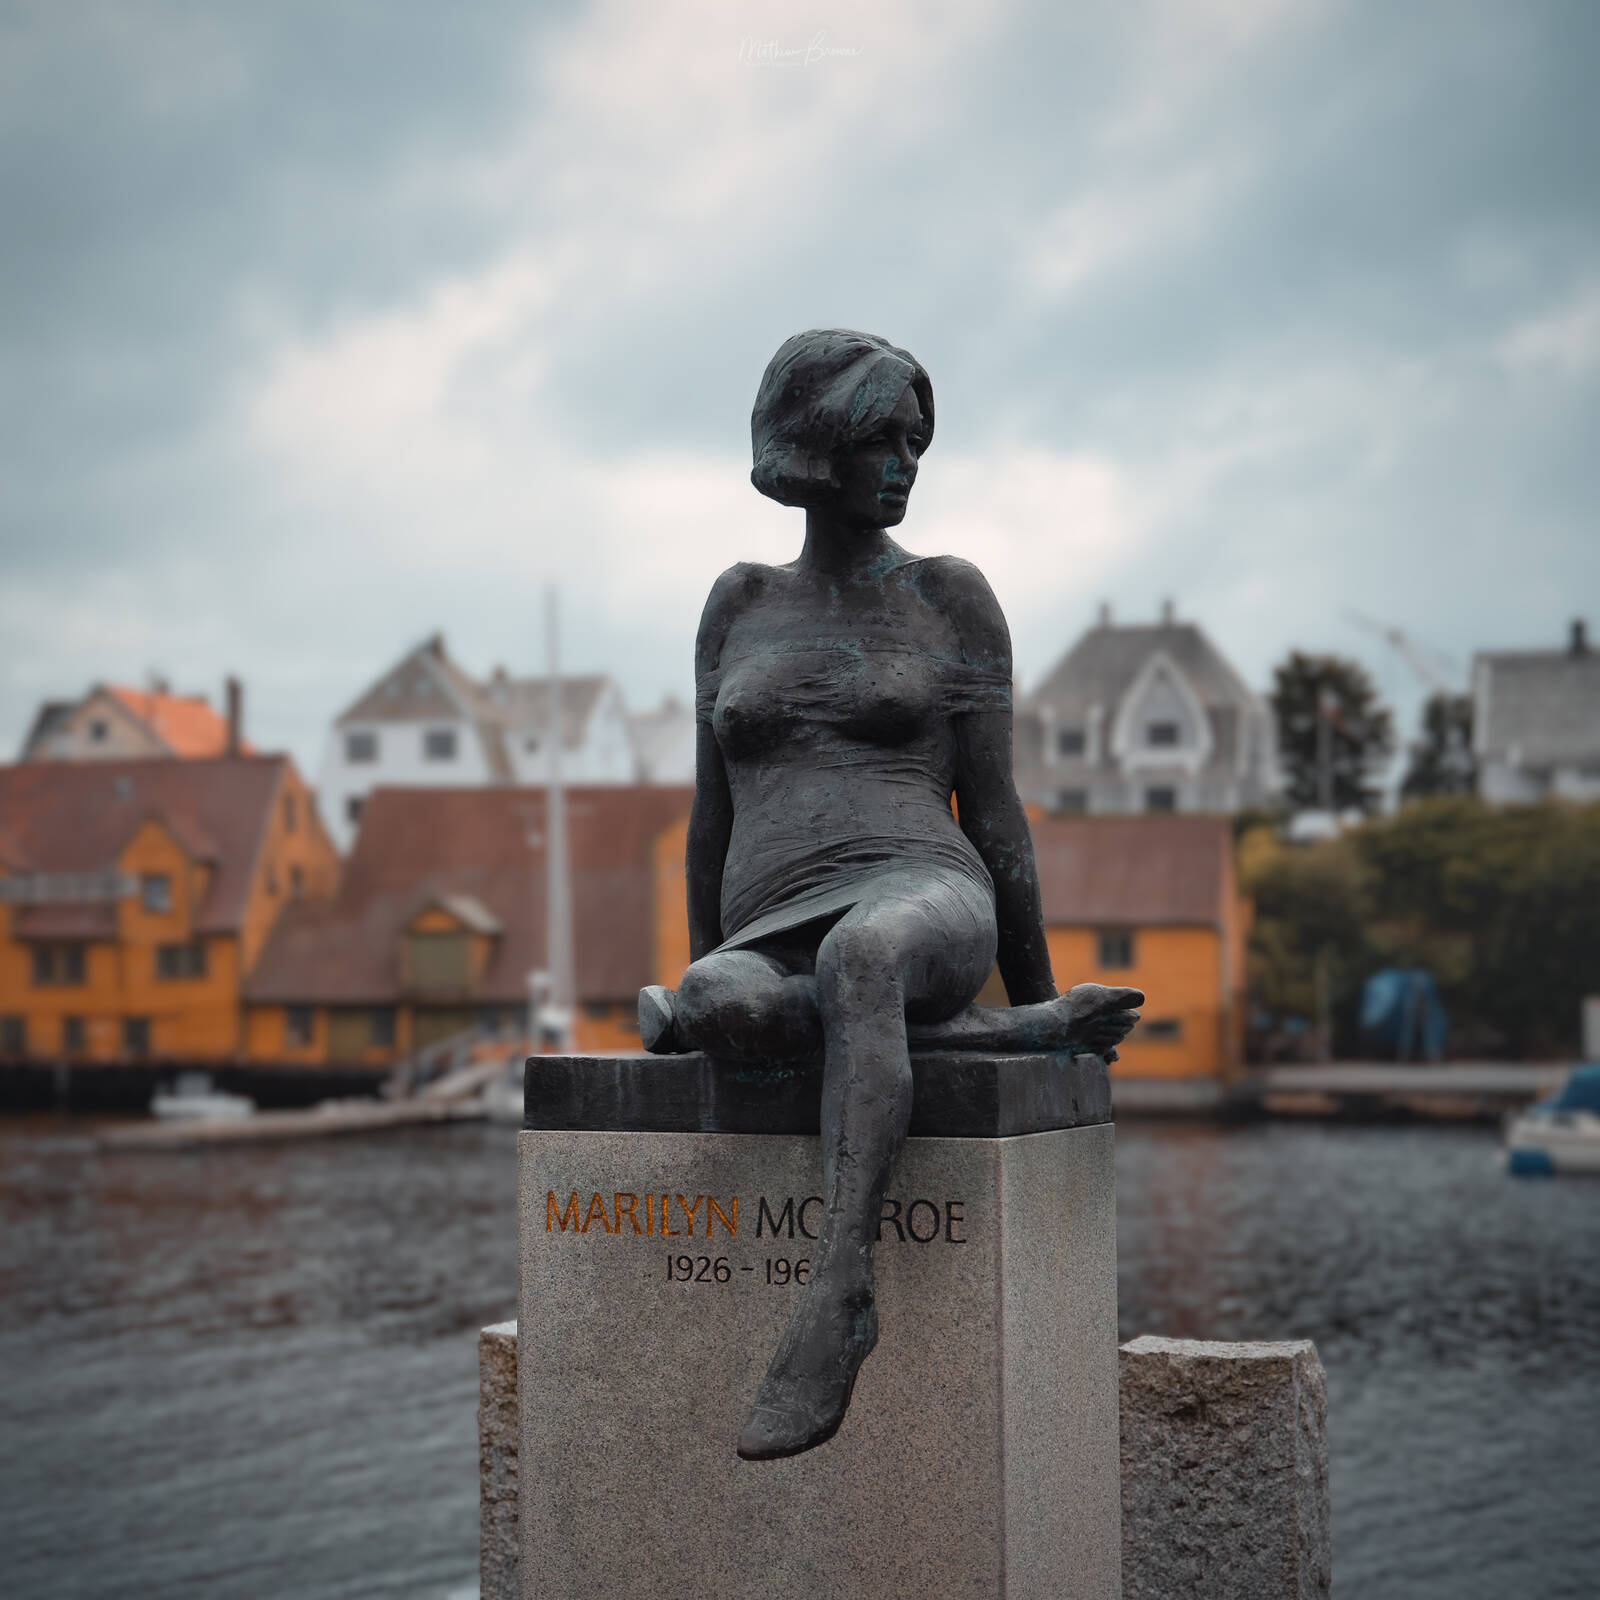 Image of Marilyn Monroe Statue of Haugesund by Mathew Browne